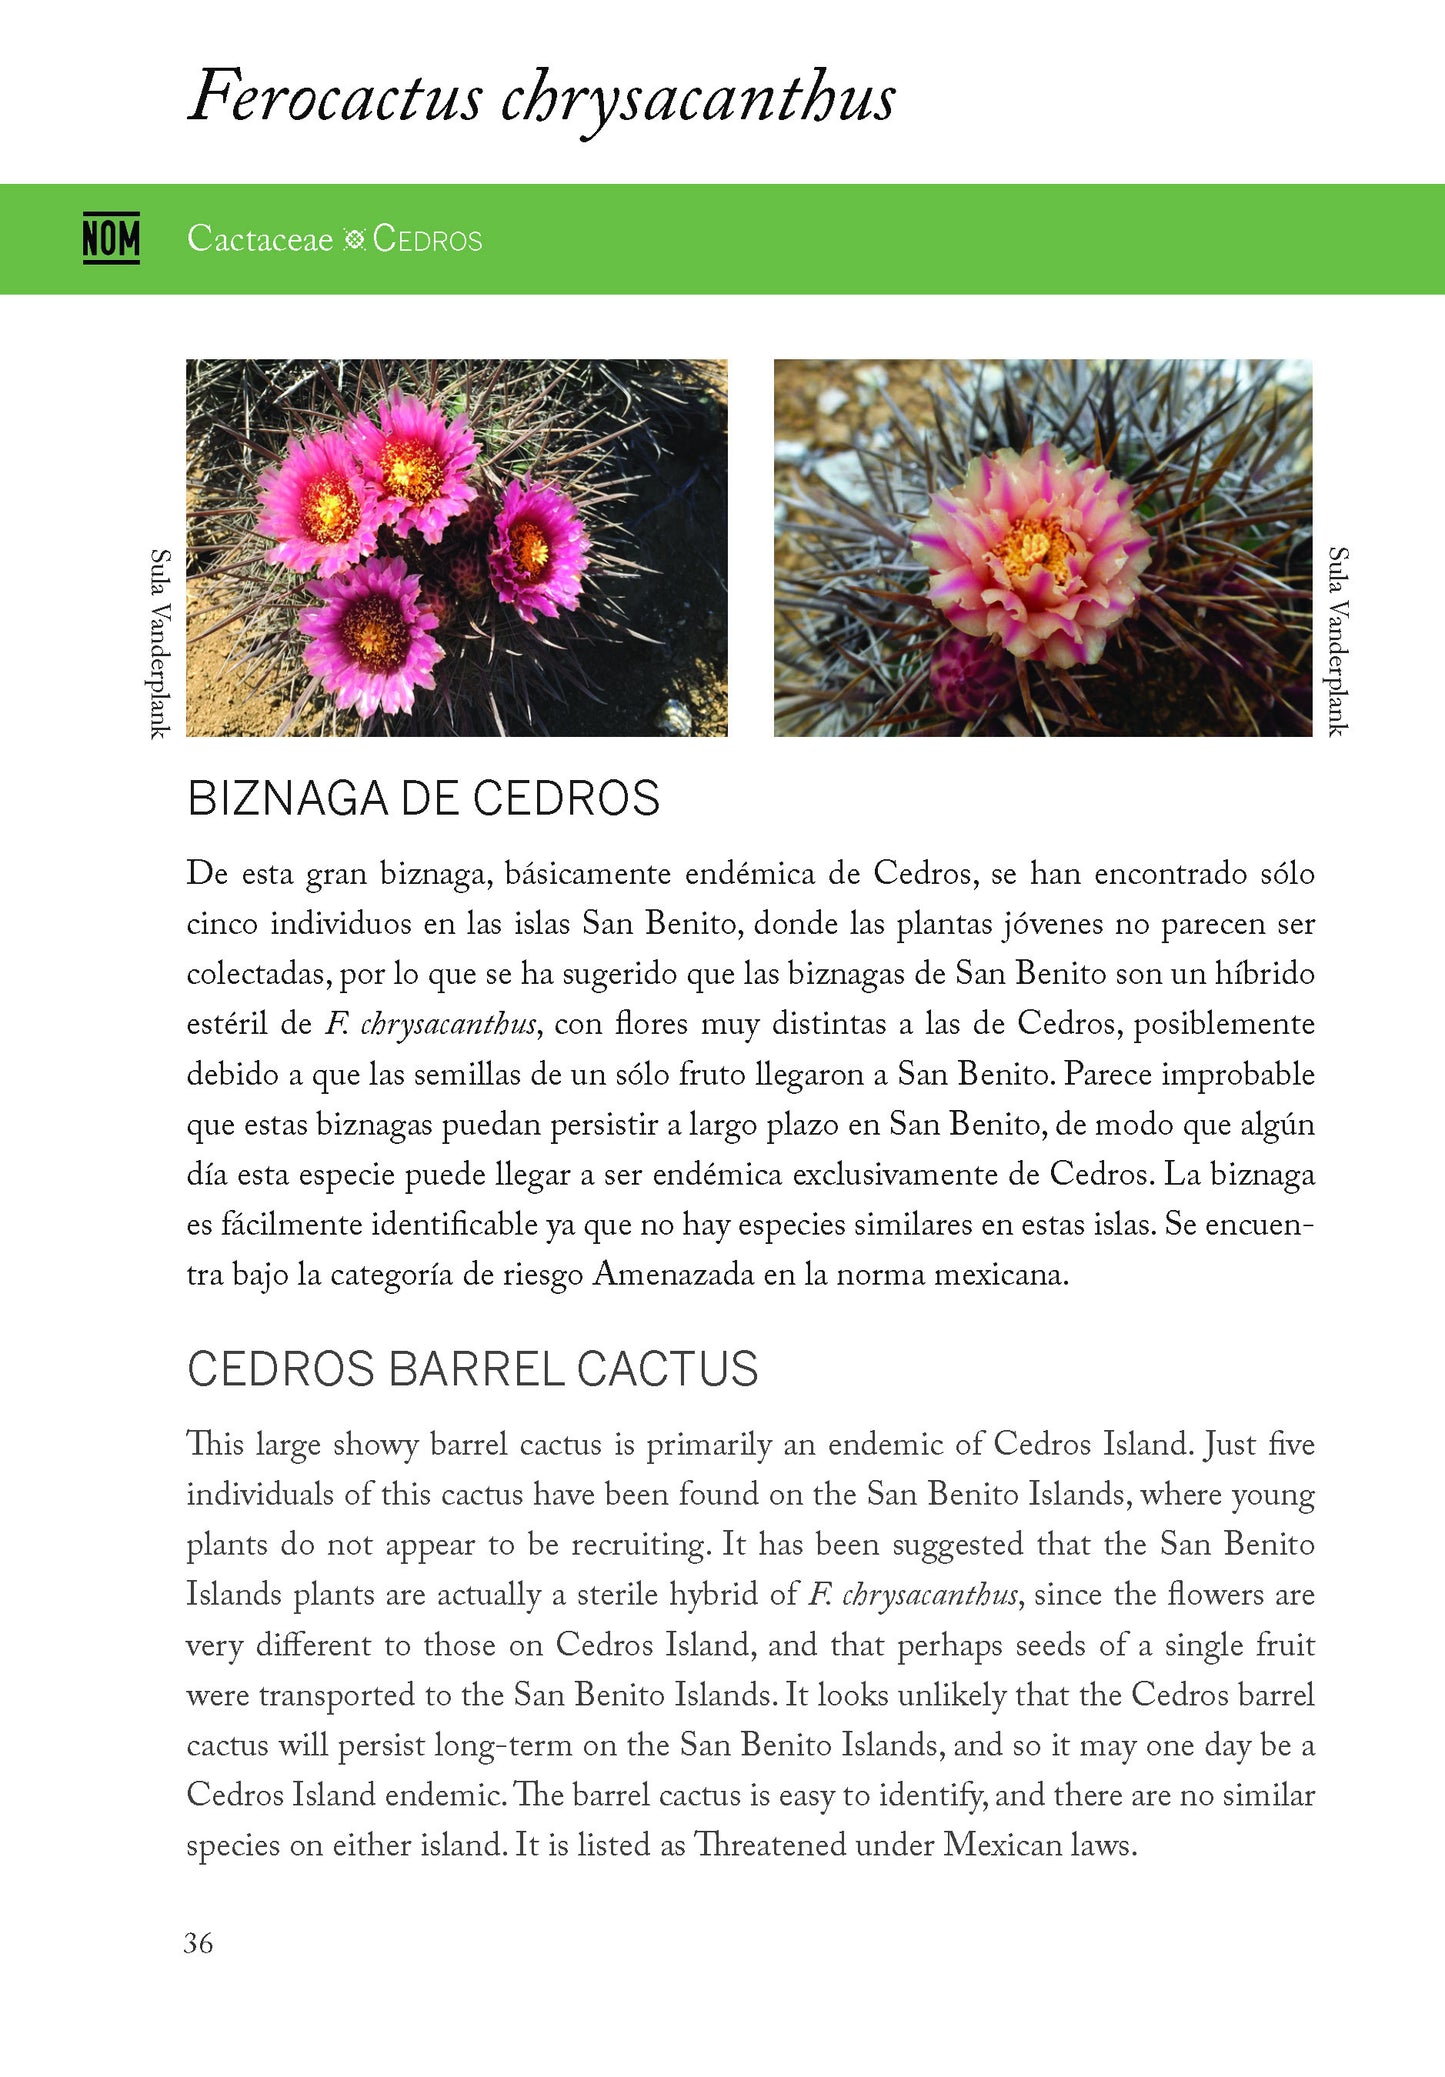 Plantas y animales únicos de las islas del Pacifico de Baja California - Unique plants and animals of the Baja California Pacific Islands (pdf version)